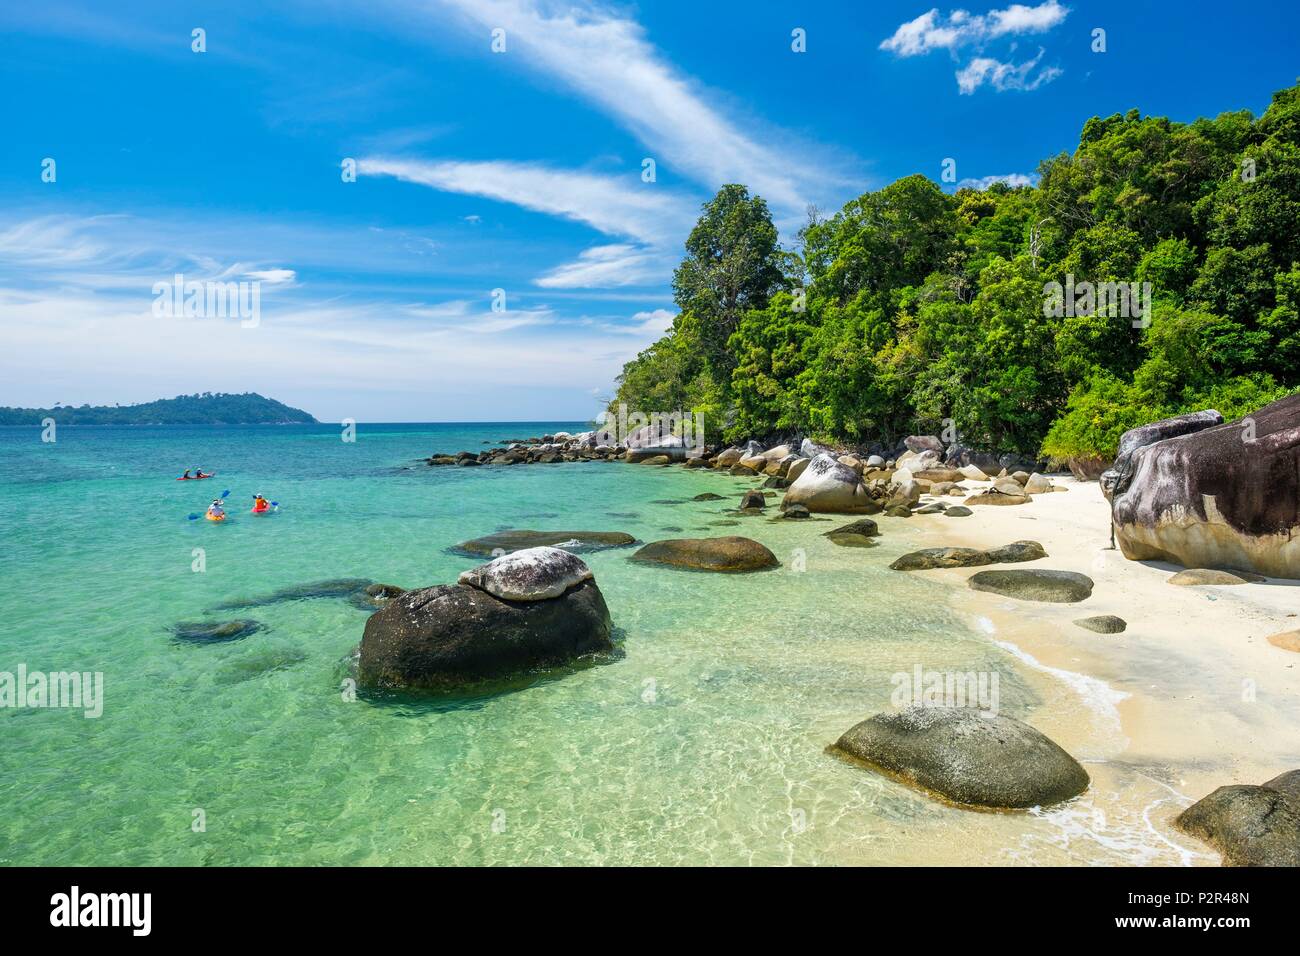 La Thaïlande, province de Phang Nga, Parc national marin de Tarutao, Ko Adang, la plage d'Adang Resort Hotel Banque D'Images